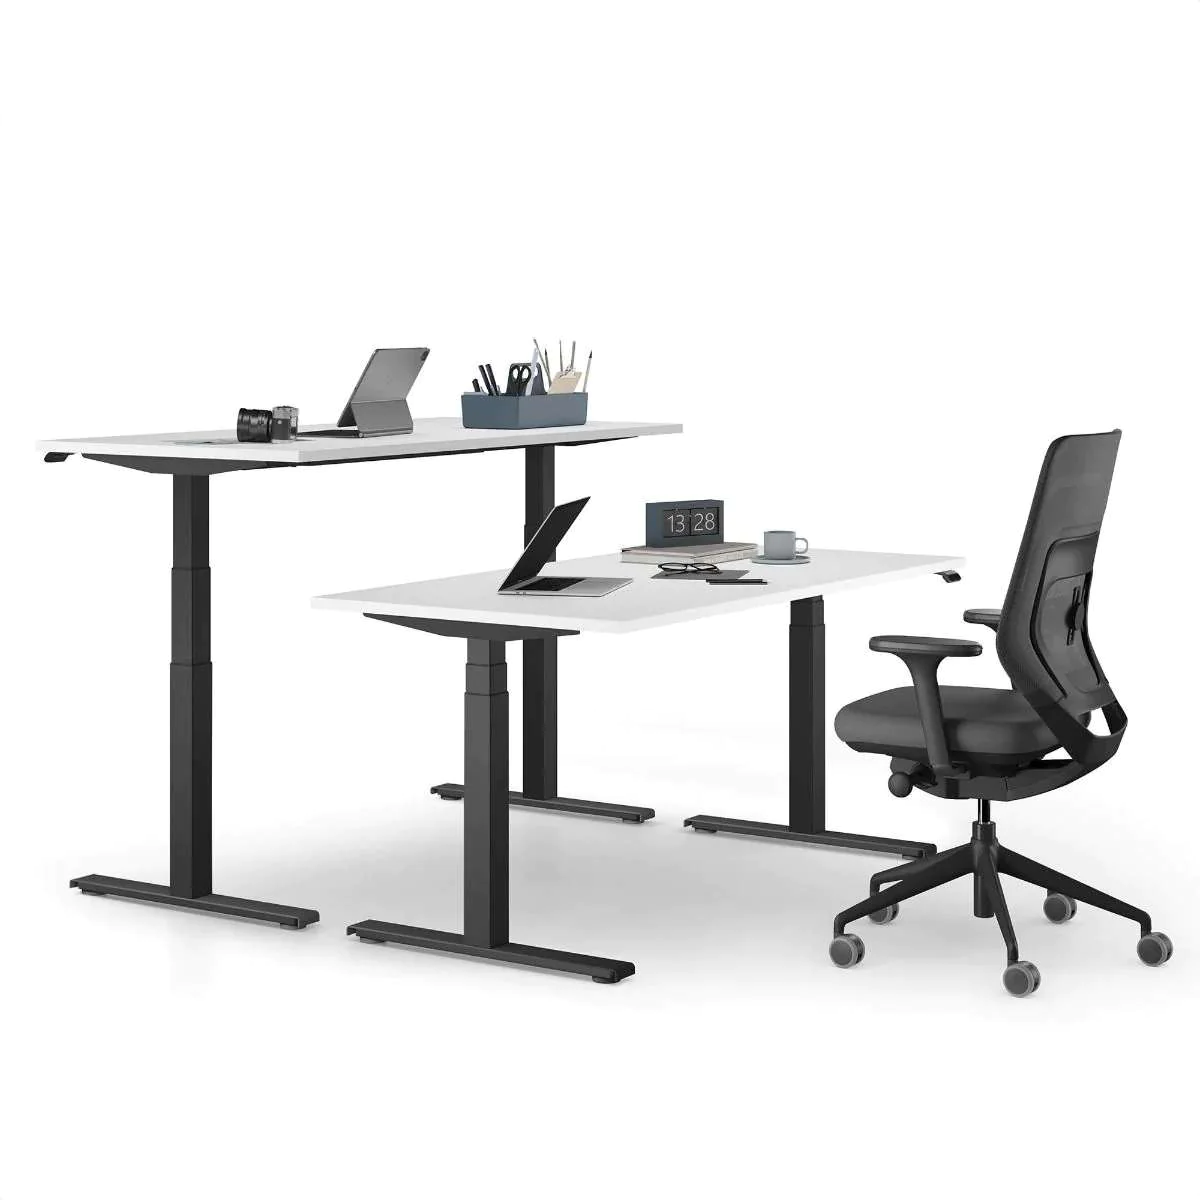 elektrisch, ergonomisch kaufen - Steh-Sitz-Tisch Schreibtische stabil & Höhenverstellbare -